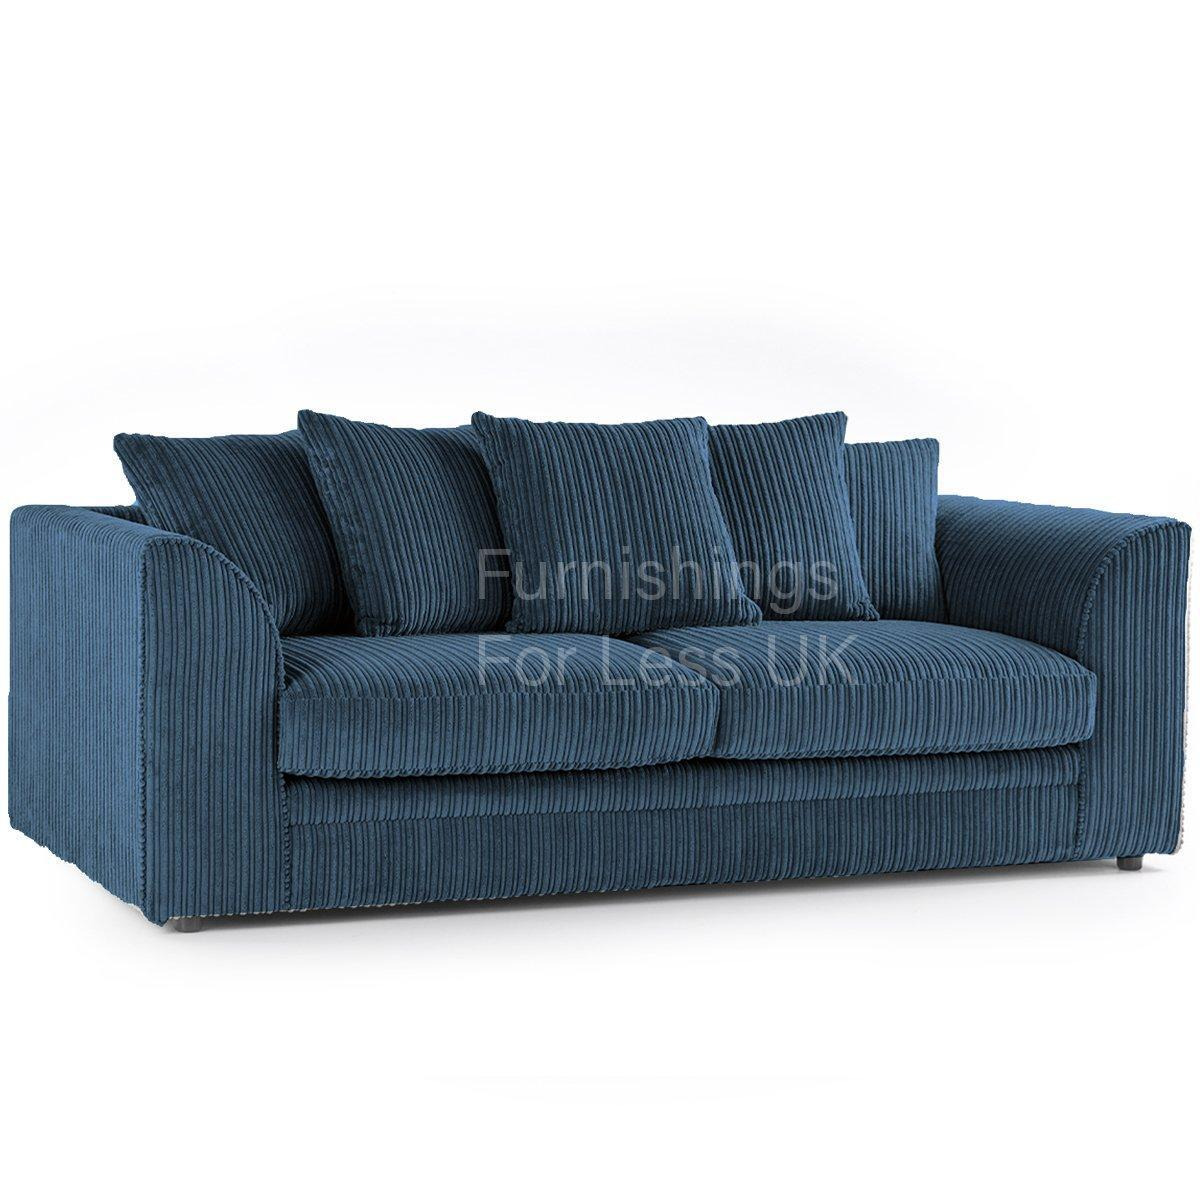 Luxor Jumbo Cord Fabric 3 Seater Sofa - image 1